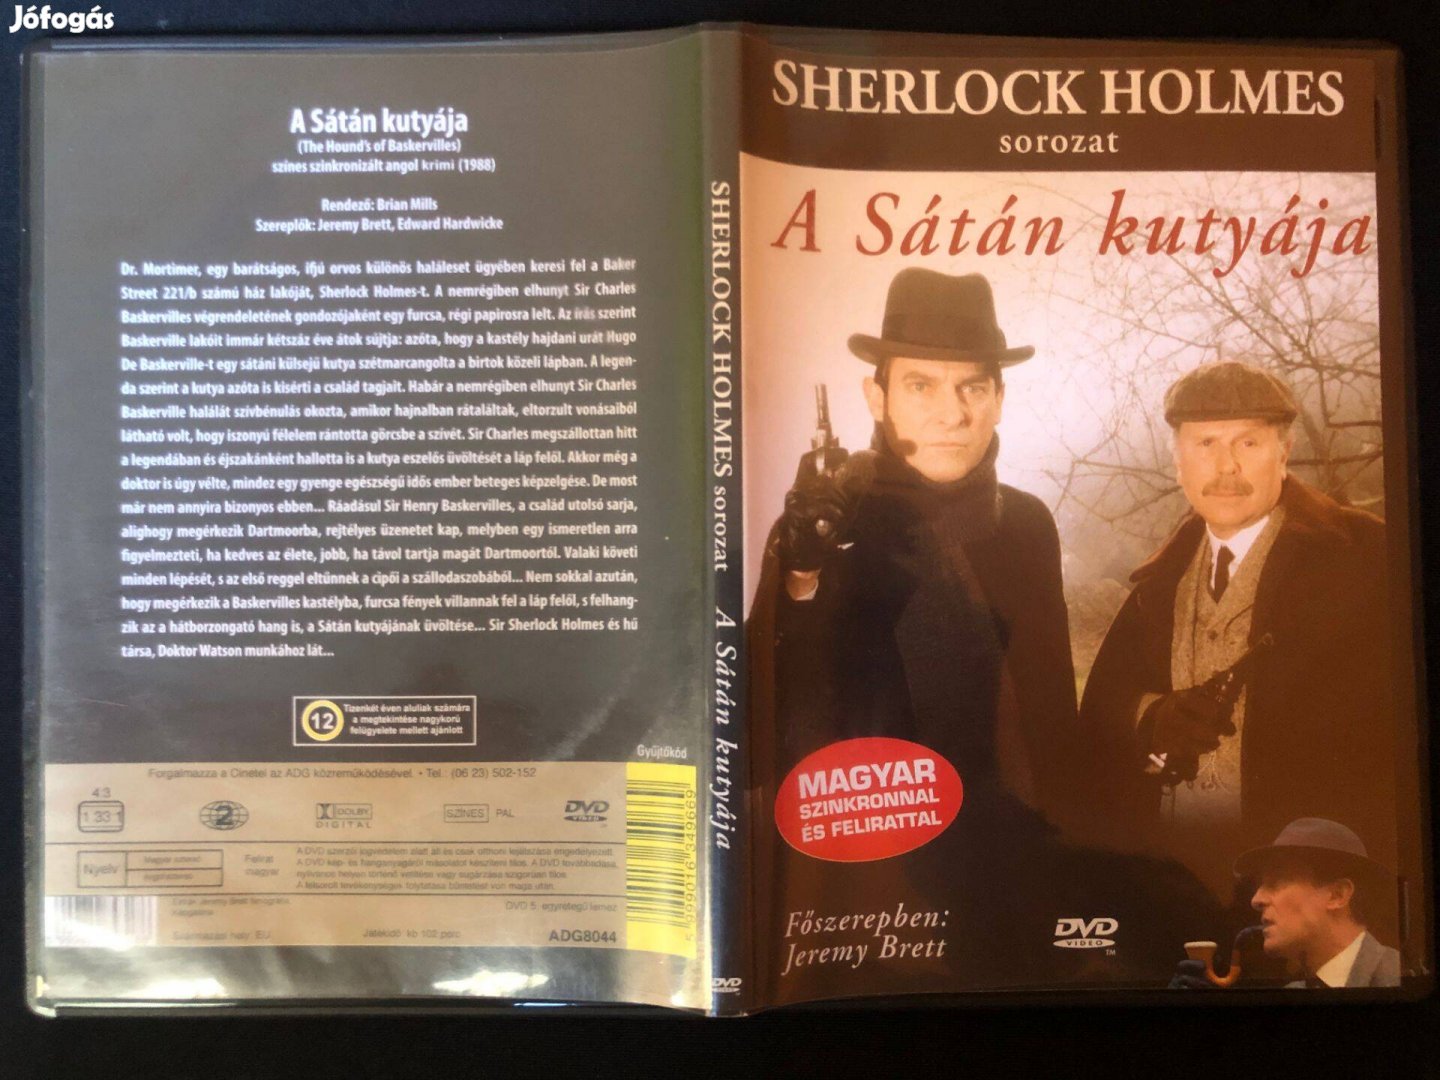 A sátán kutyája Sherlock Holmes (karcmentes, Cinetel kiadás) DVD